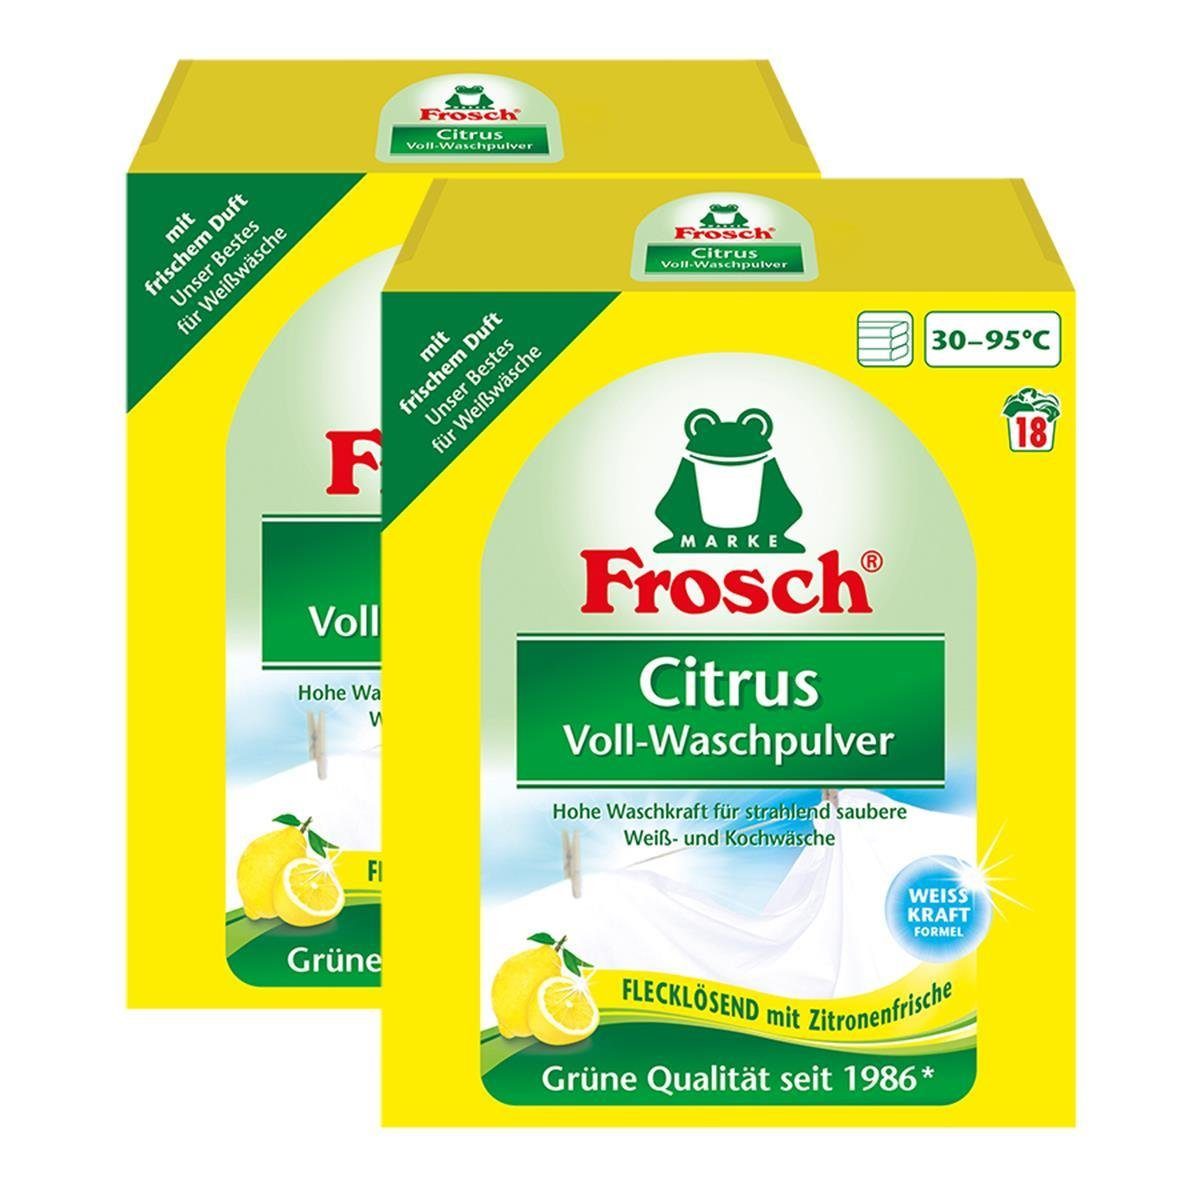 FROSCH 2x Frosch Citrus Voll-Waschpulver 1,35 kg – Flecklösend mit Zitrone Vollwaschmittel